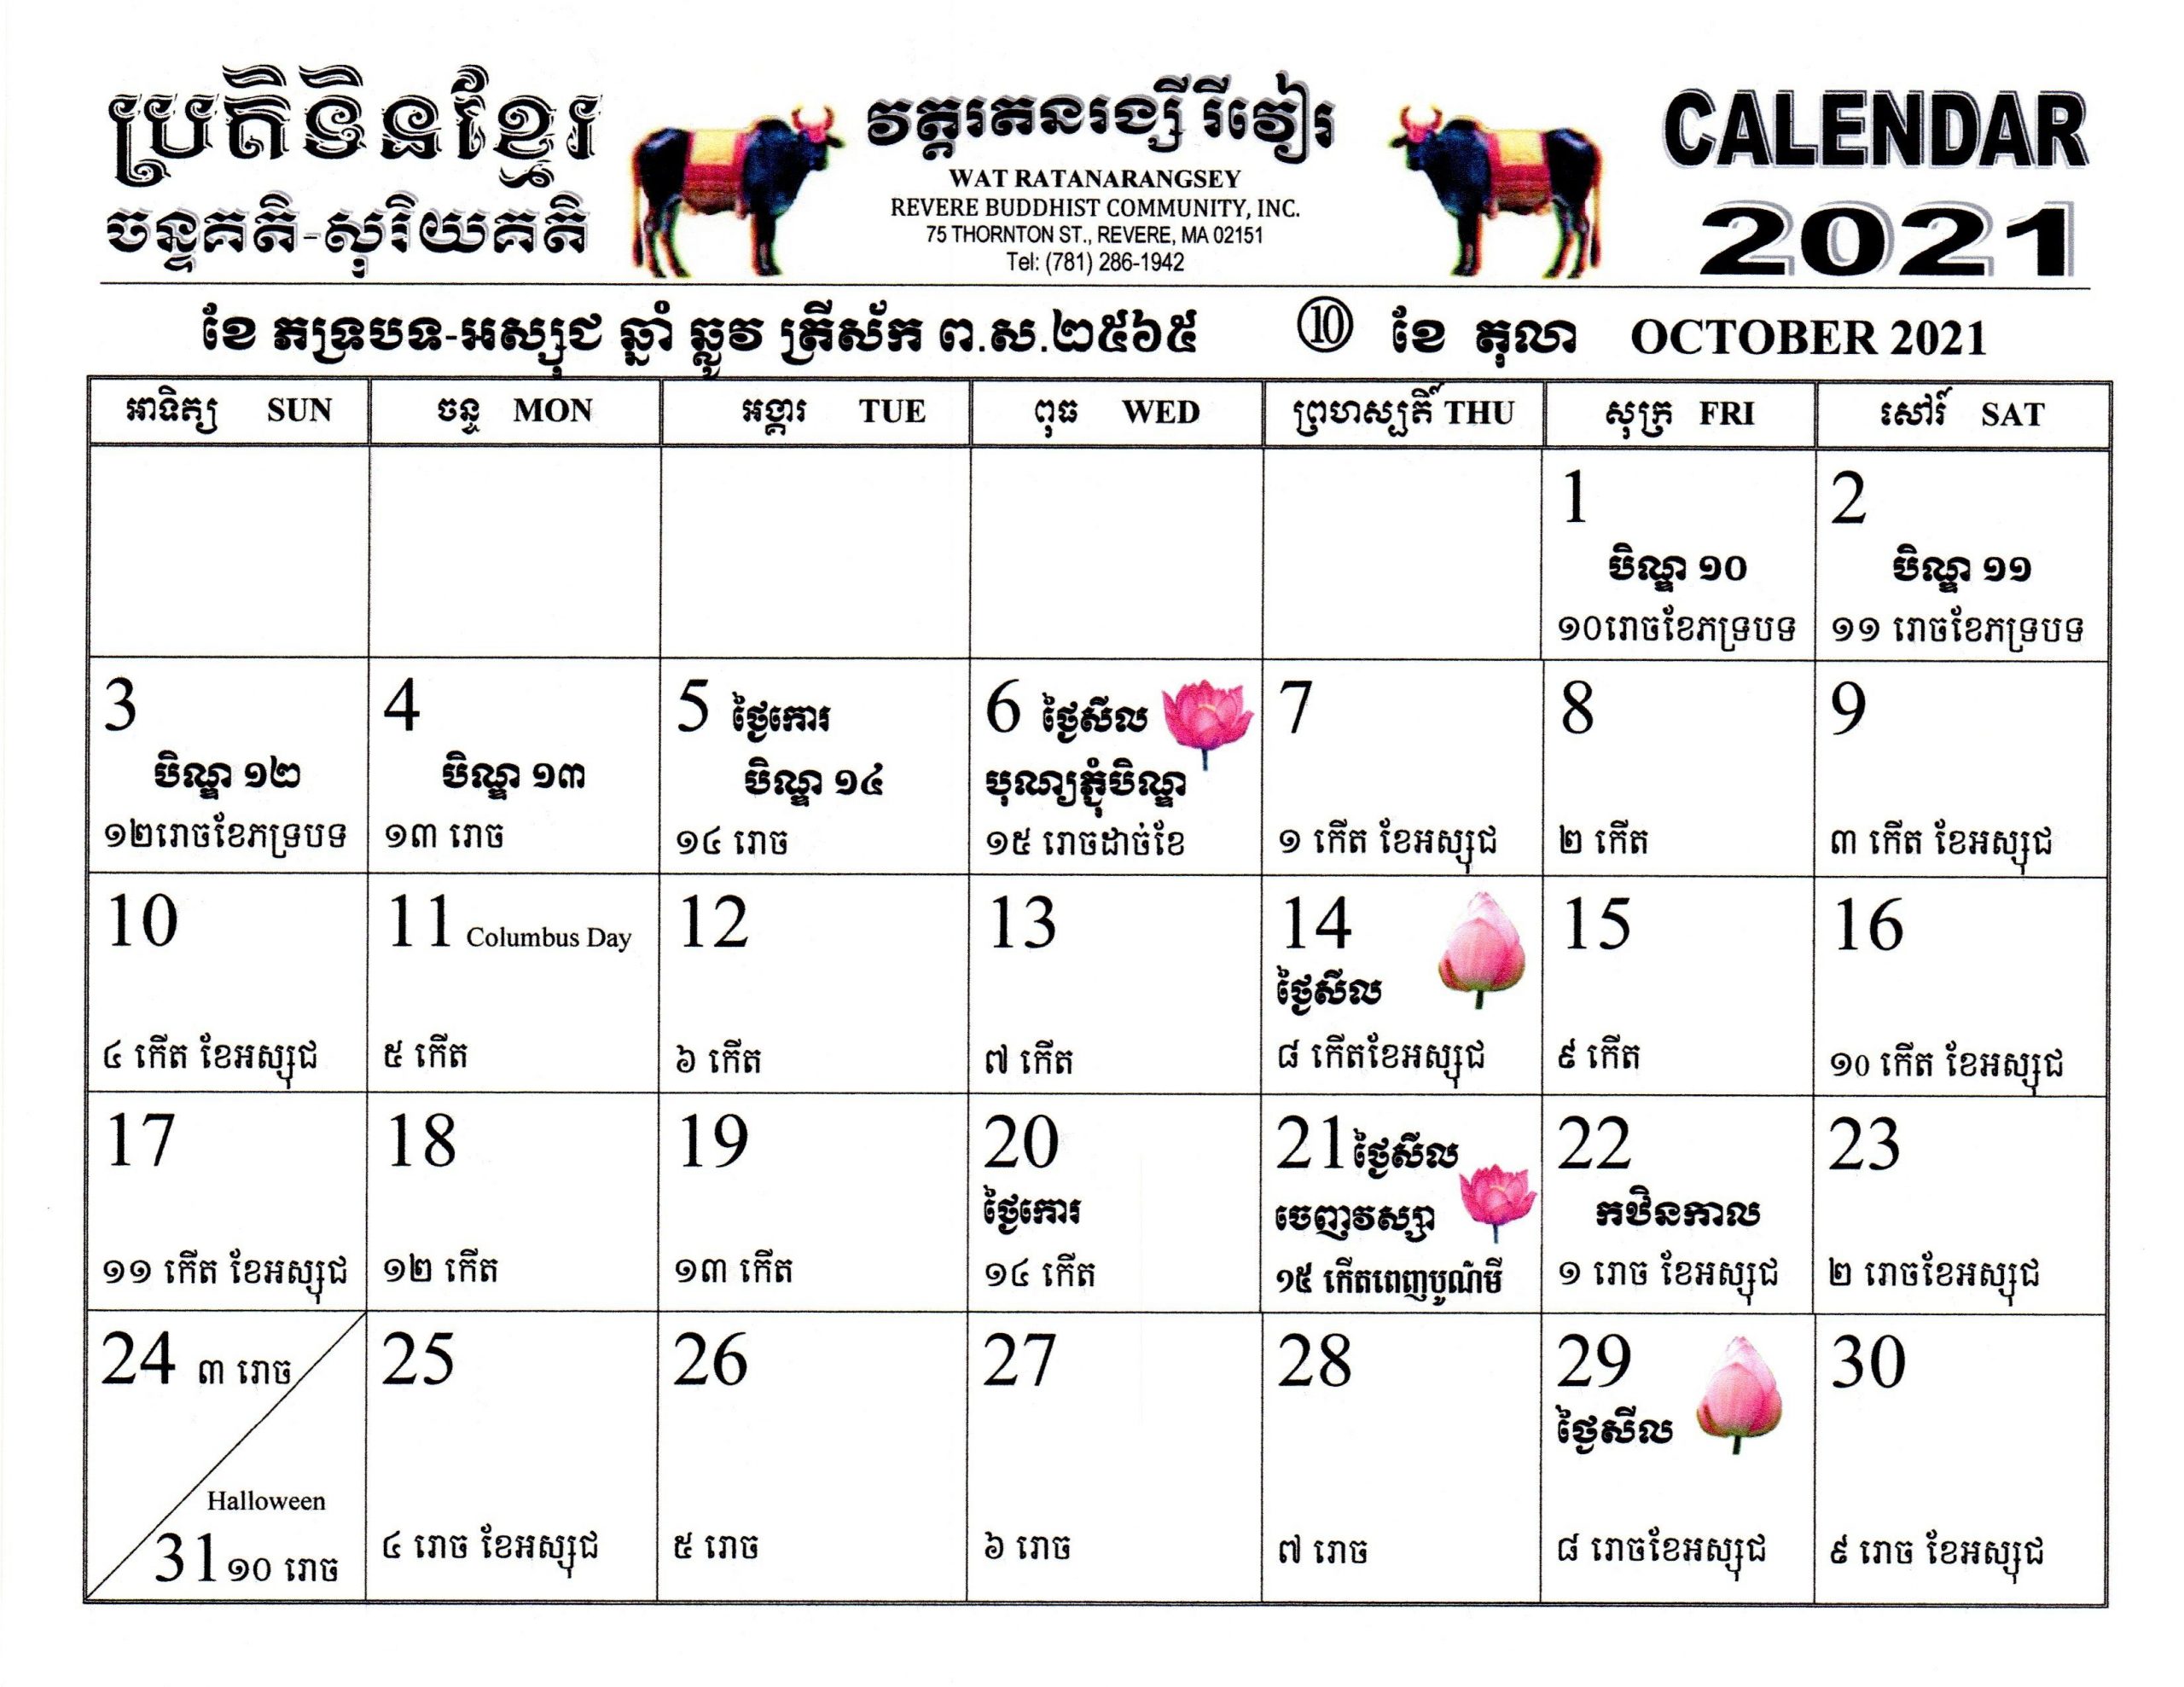 Khmer Calendar 2021-2565 ប្រតិទិនខ្មែរ ឆ្នាំឆ្លូវ ព.ស.២៥៦៥